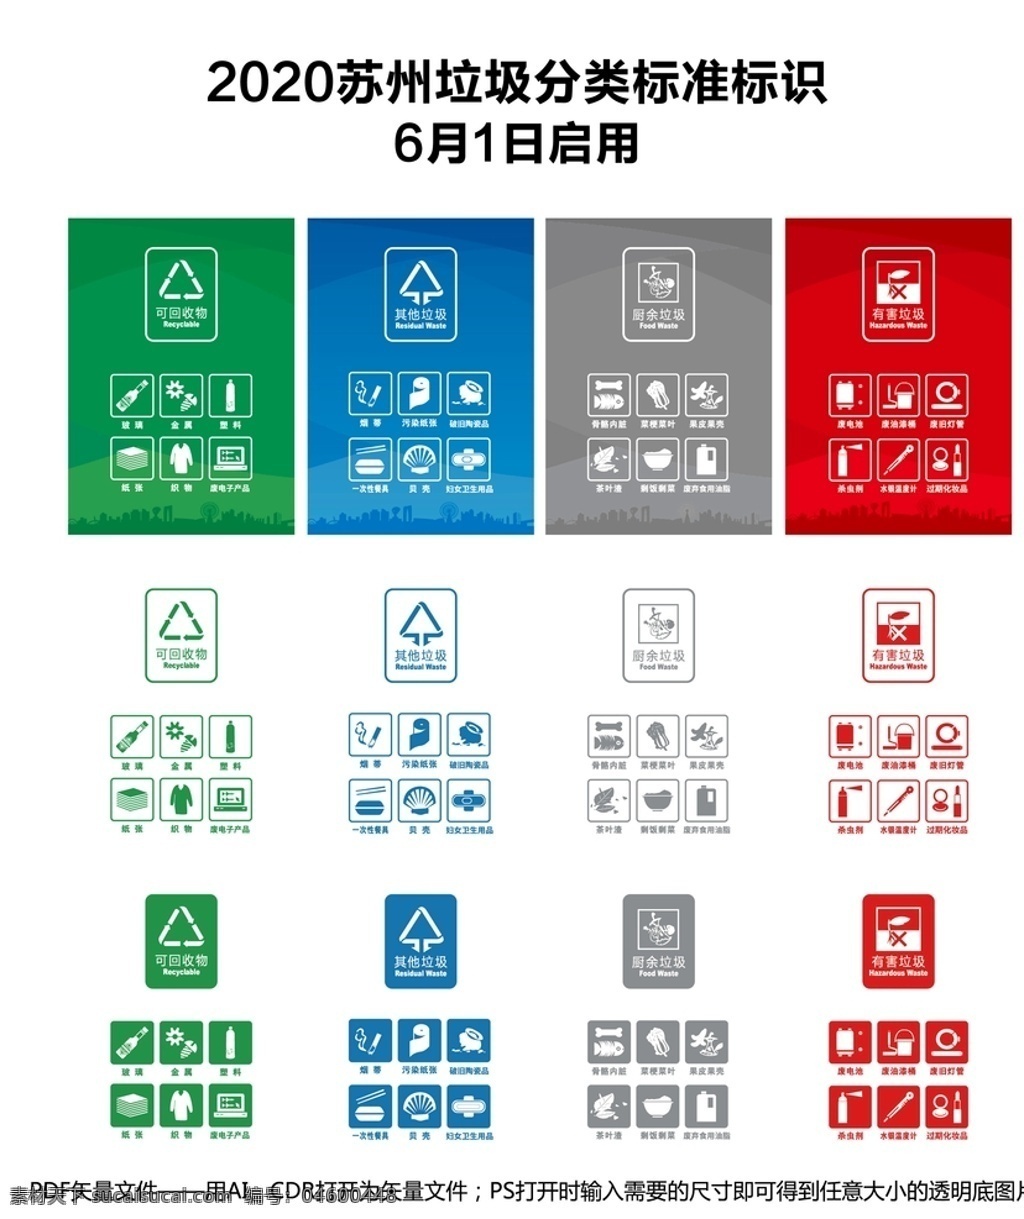 新 垃圾 分类 图标 2020 苏州 版 垃圾分类 新版垃圾分类 苏州垃圾分类 logo设计 pdf